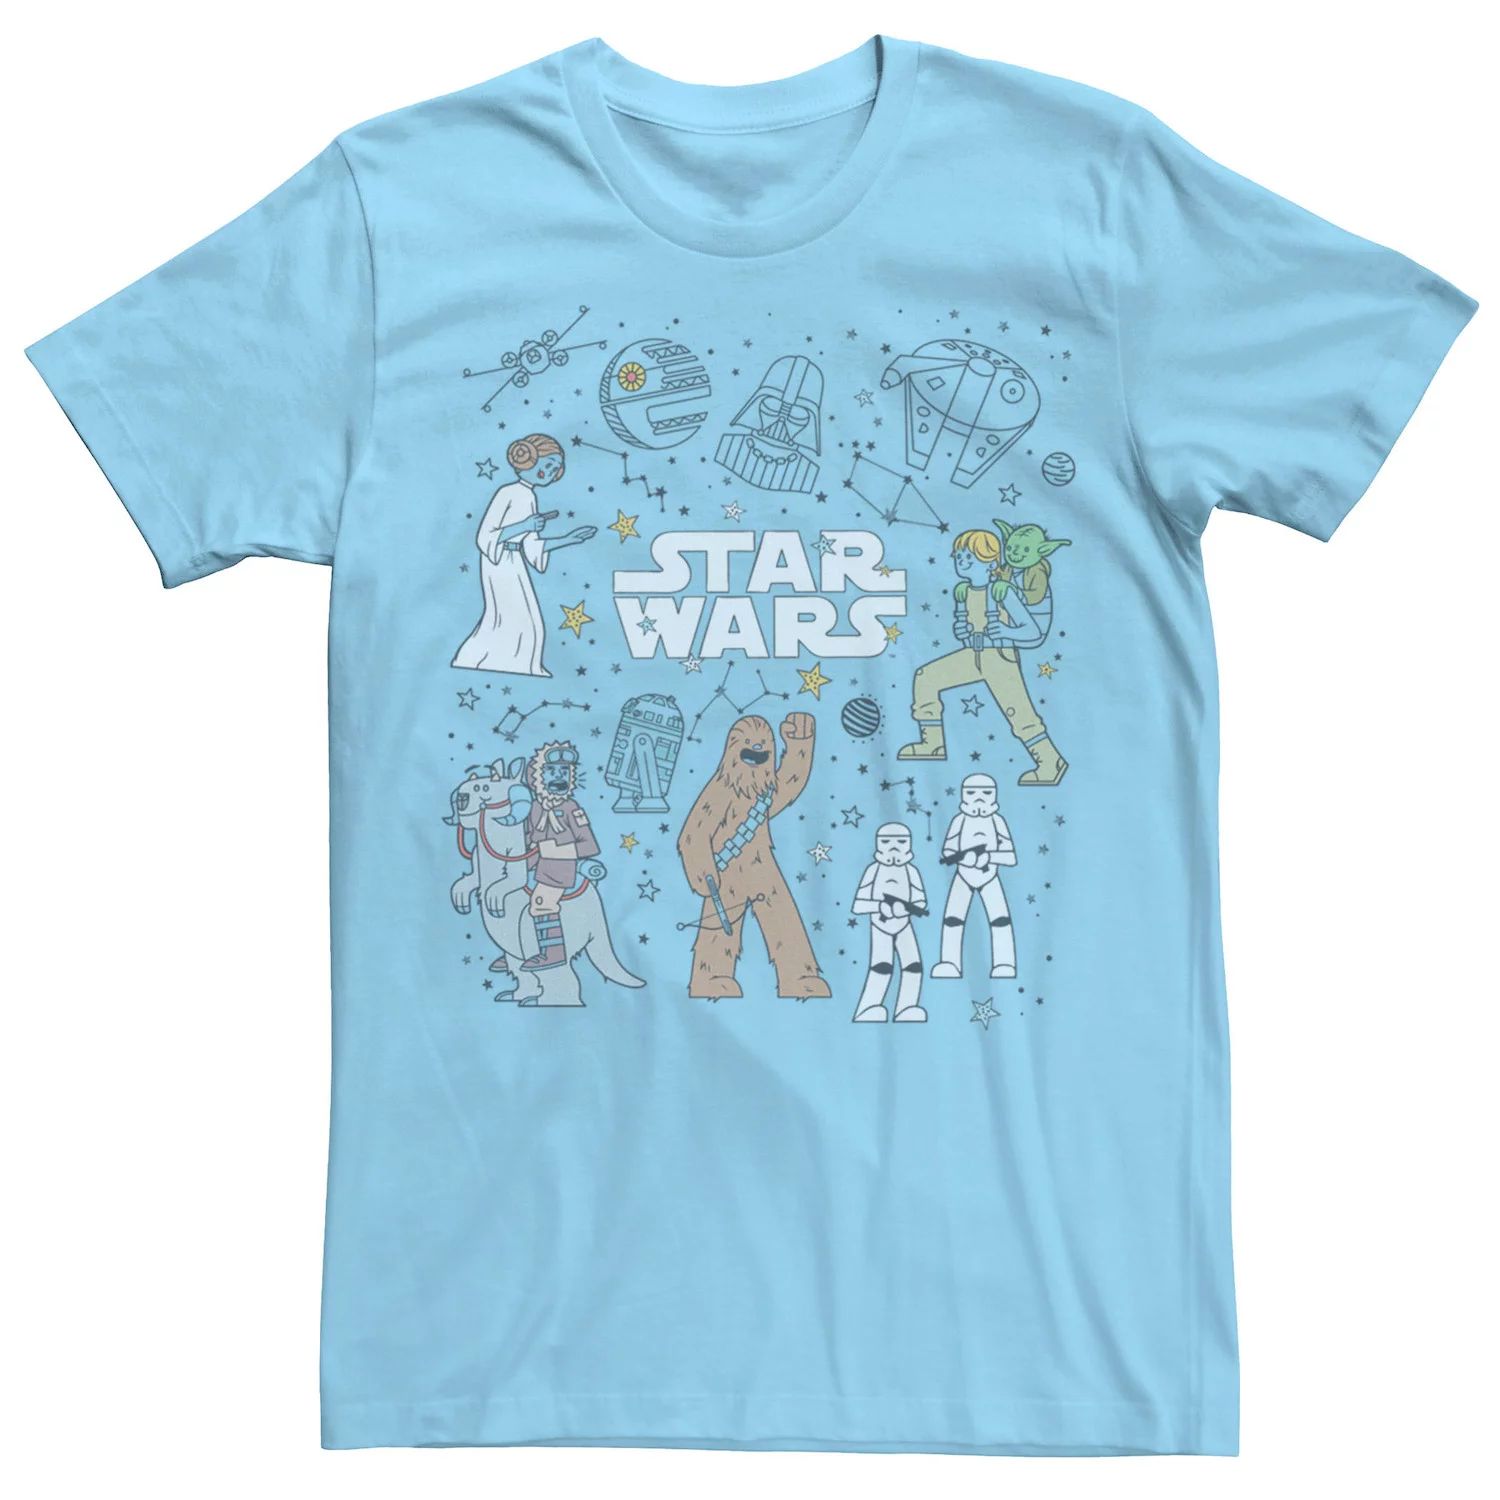 Мужская футболка с рисунками «Звездные войны» и «Созвездие» Star Wars, светло-синий мужская футболка с рисунками звездные войны и созвездие star wars светло синий